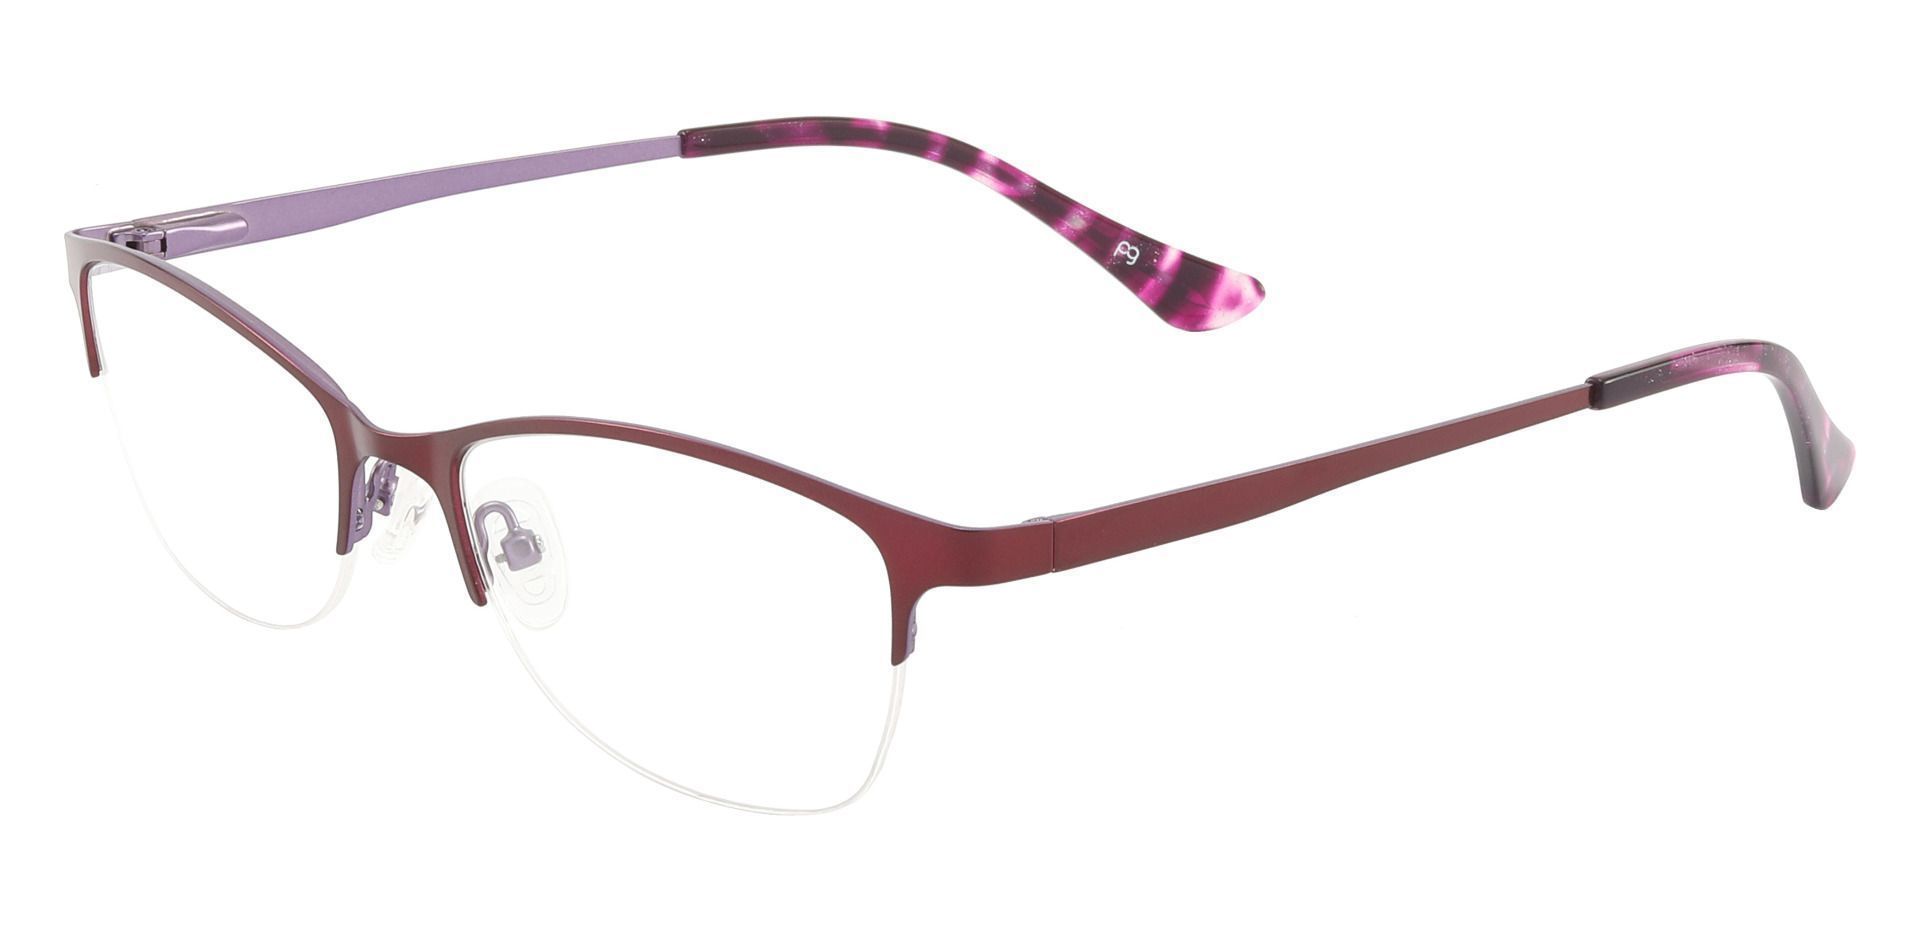 Quigley Oval Prescription Glasses - Purple